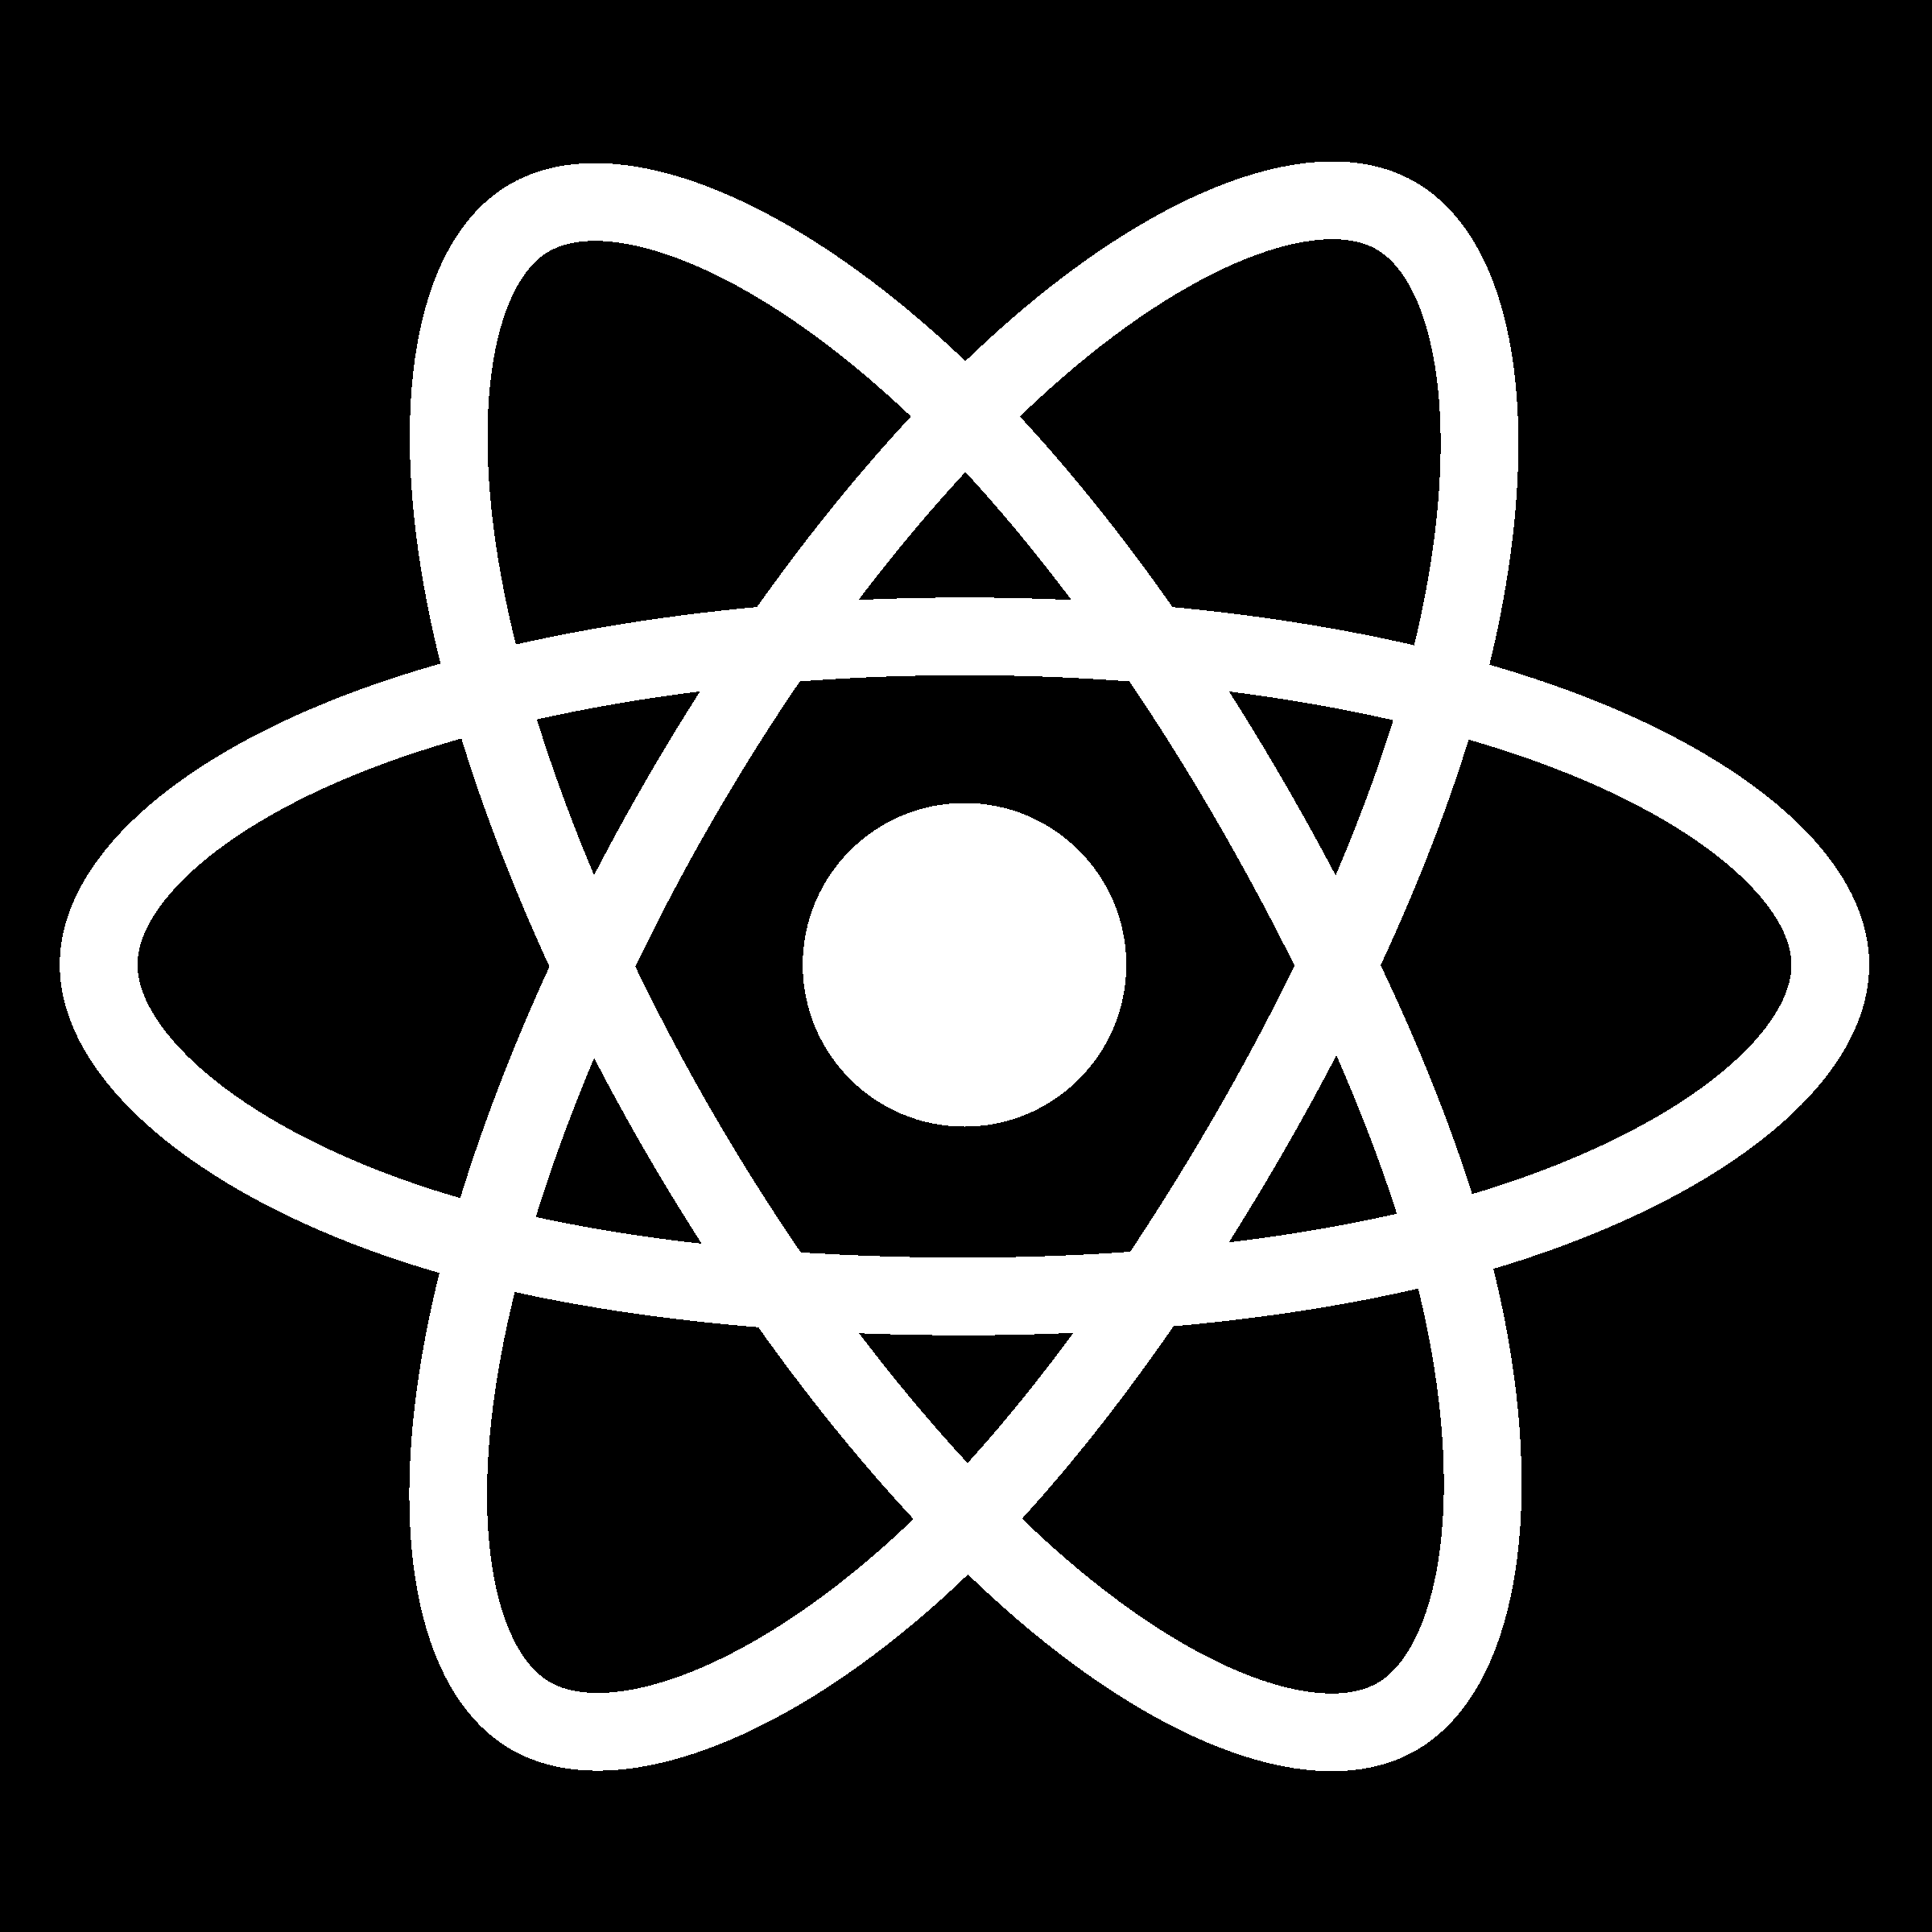 react-1-logo-black-and-white